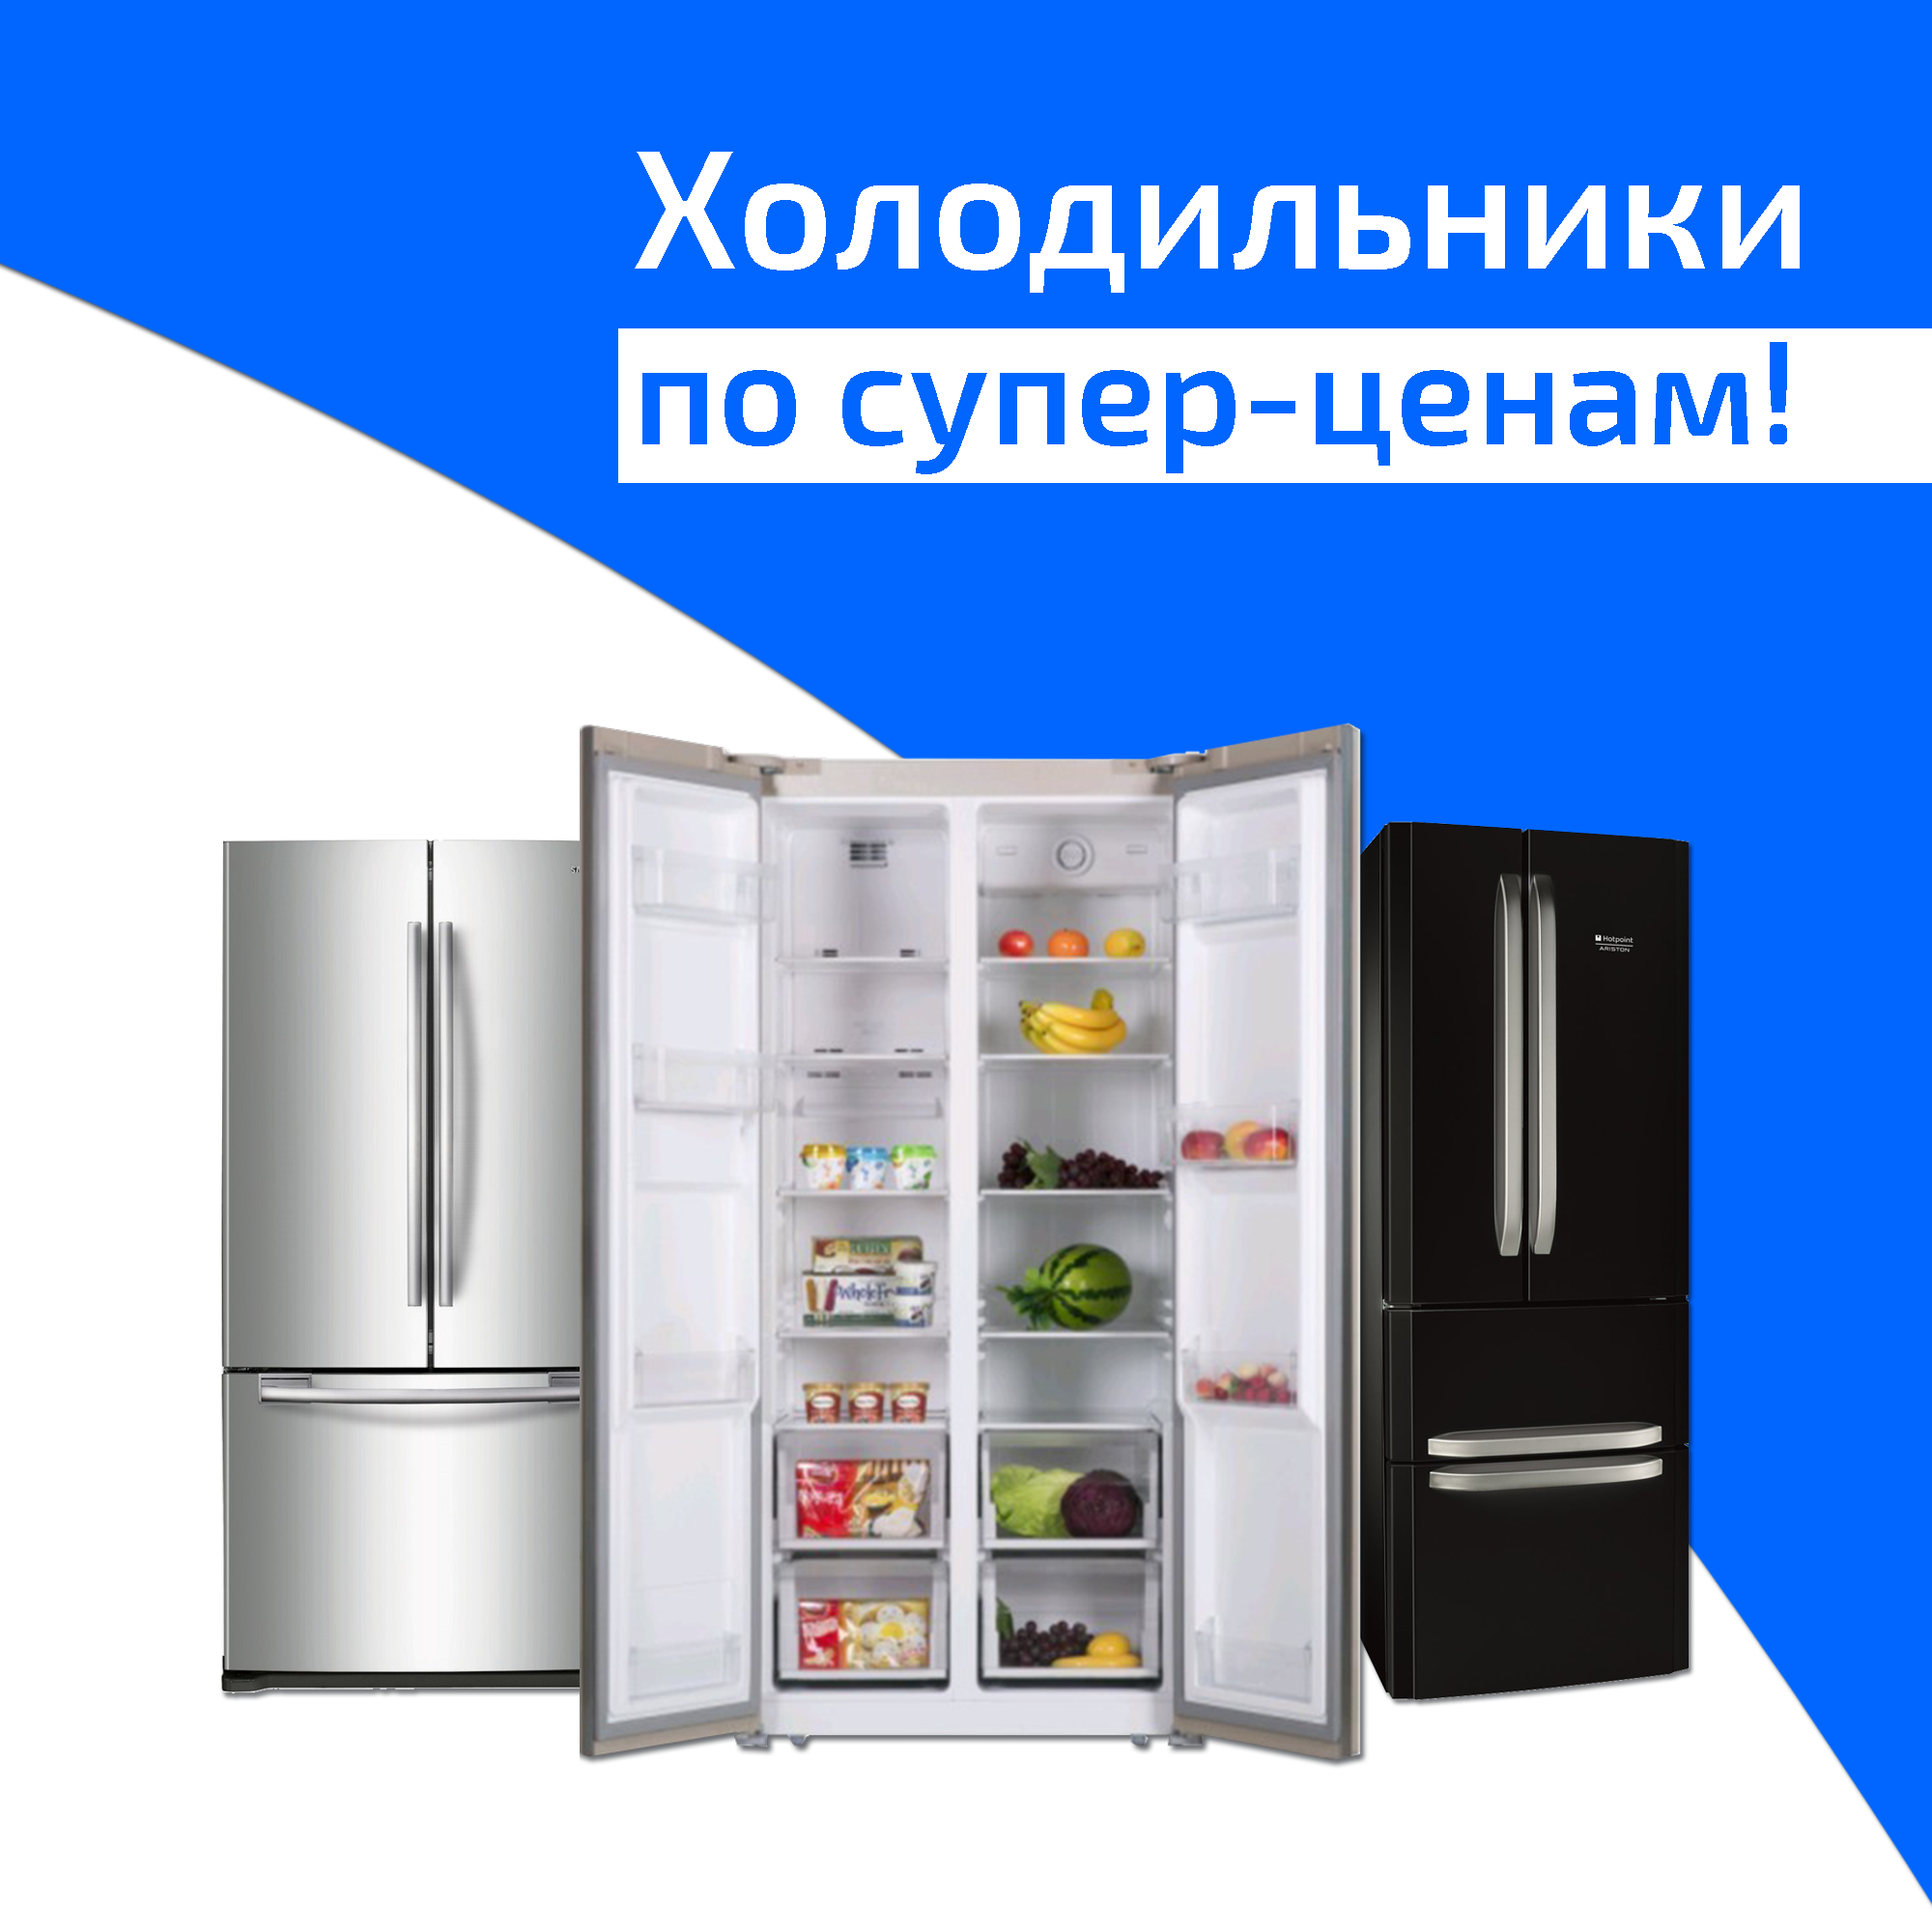 Холодильники по супер-ценам от Aleco